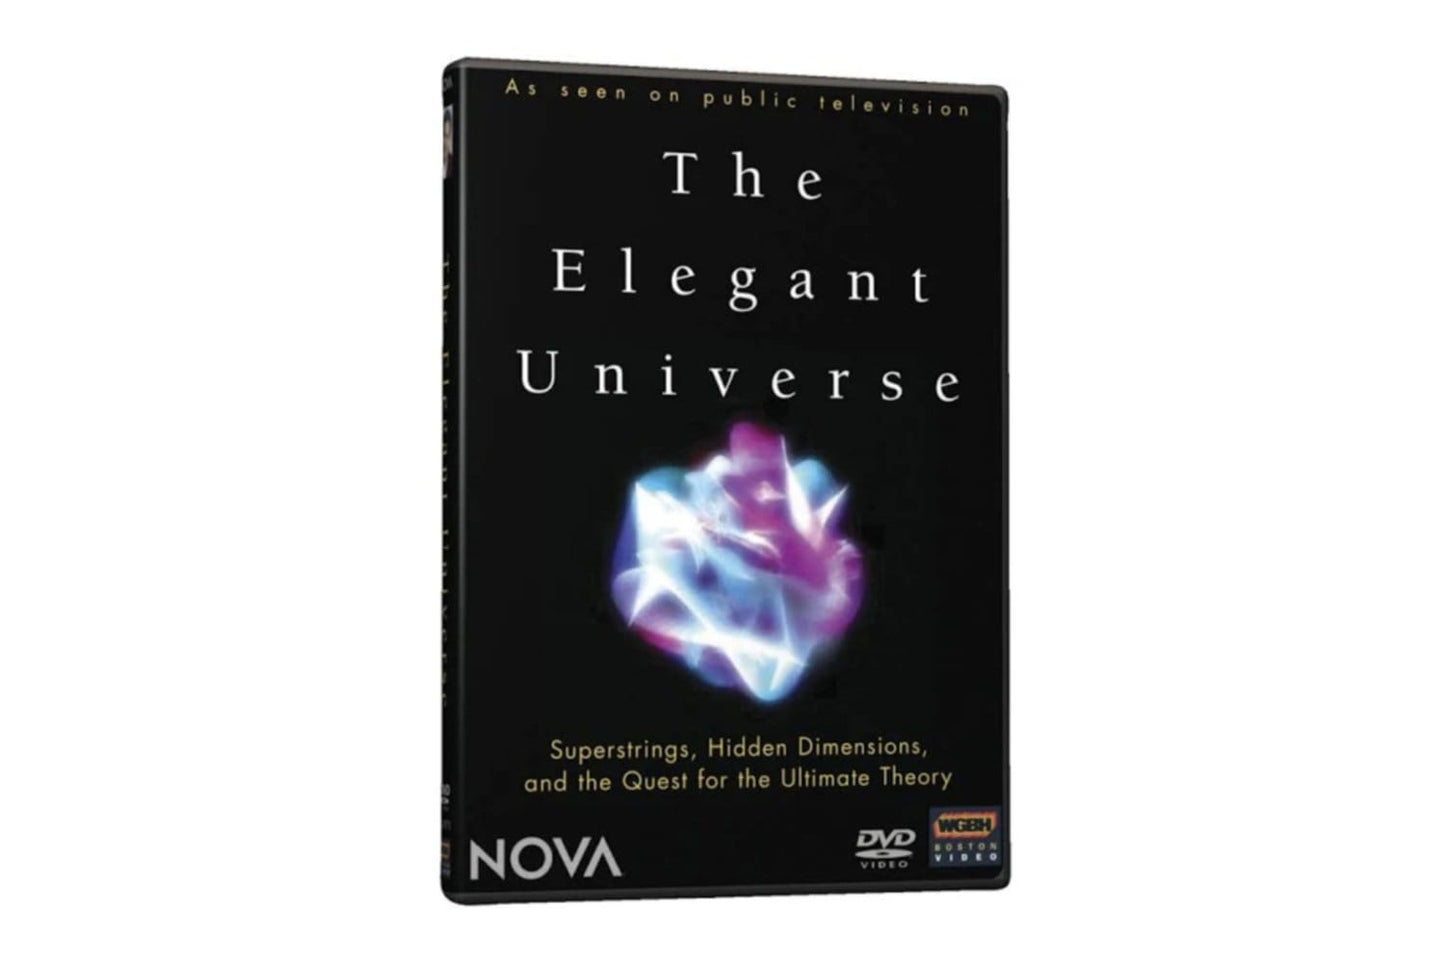 Arbor Scientific NOVA The Elegant Universe DVD